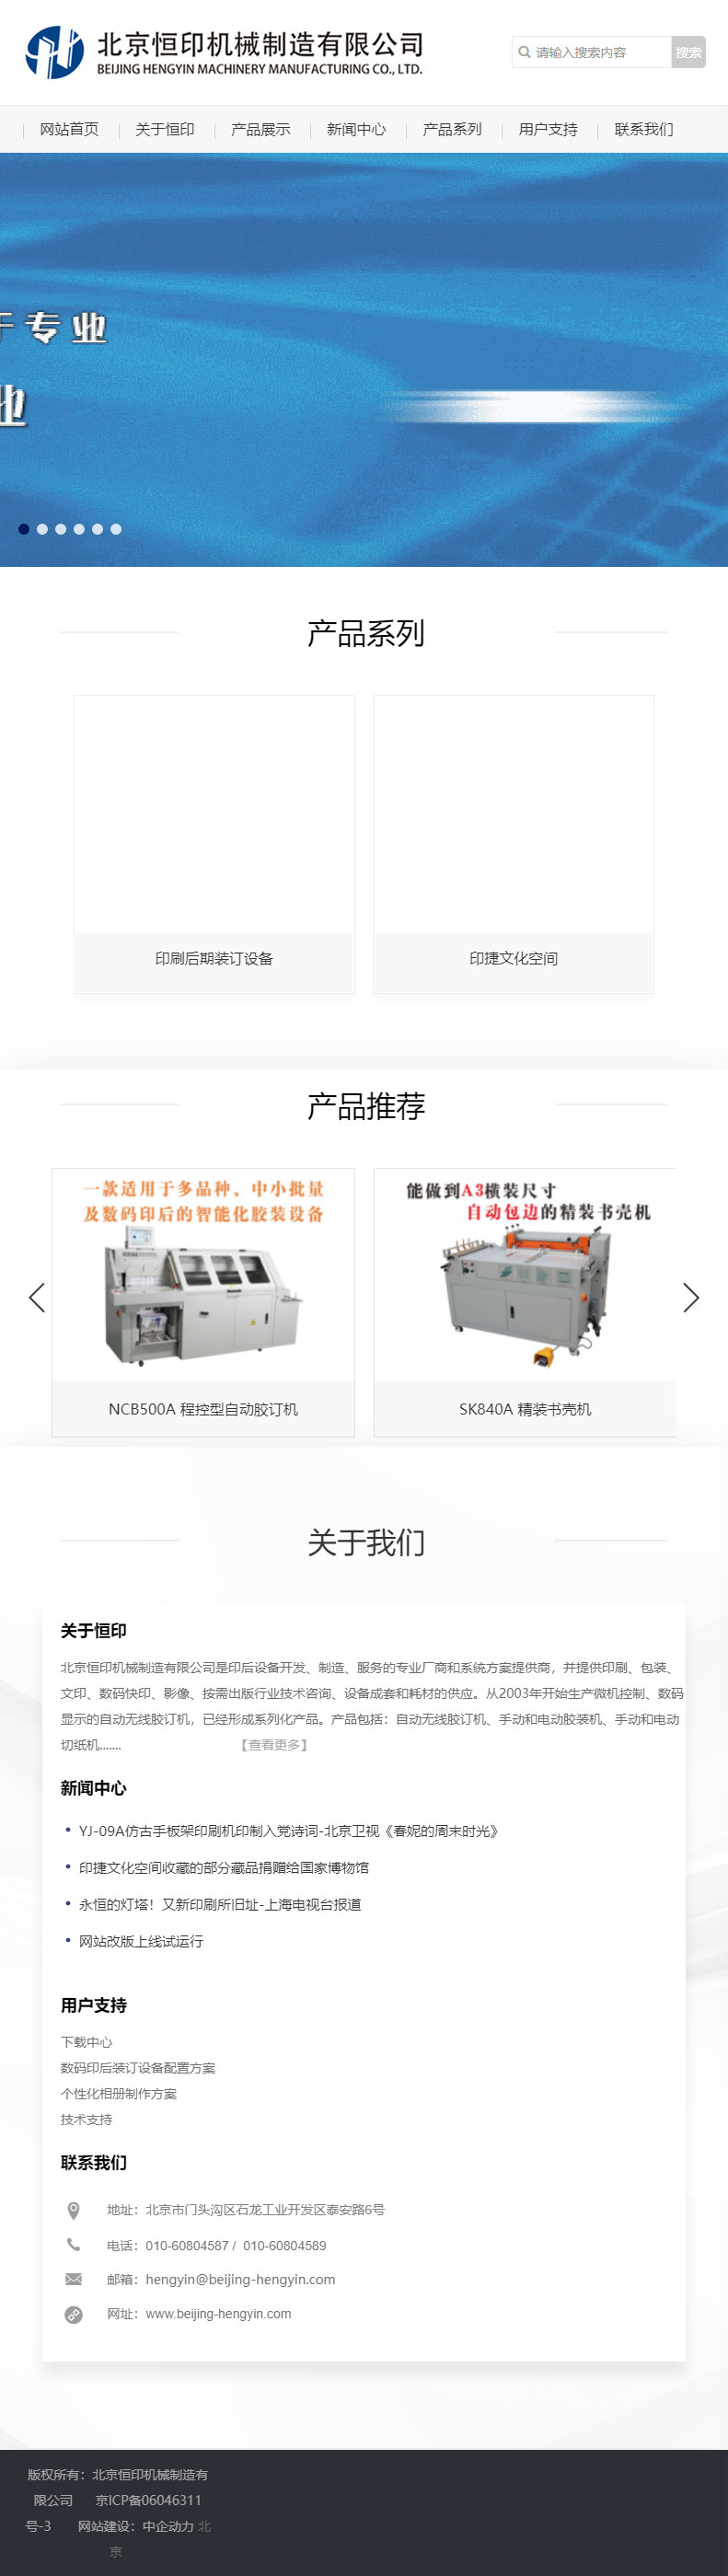 北京恒印机械制造有限公司网站案例